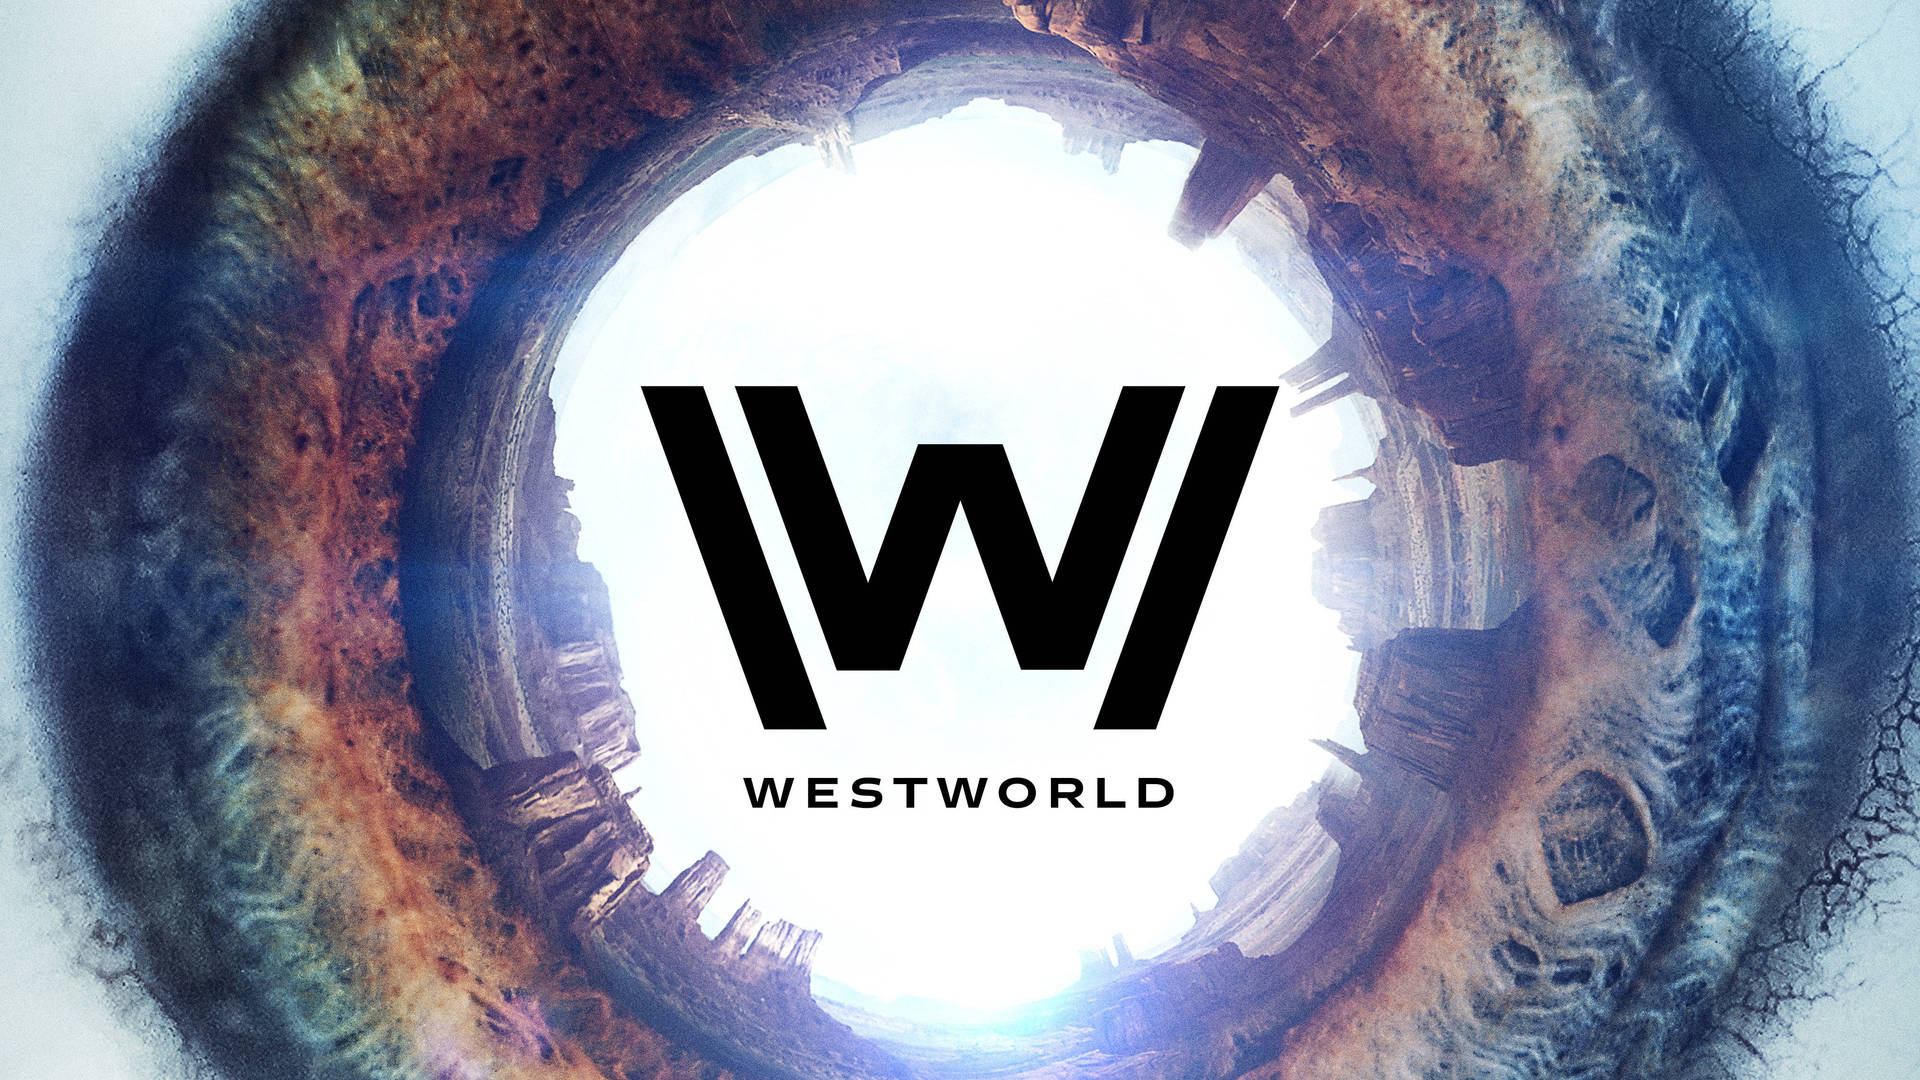 Design - Vær som en indfødt dansk talsmand og design entréen med Westworlds logo i dimensioner. Wallpaper